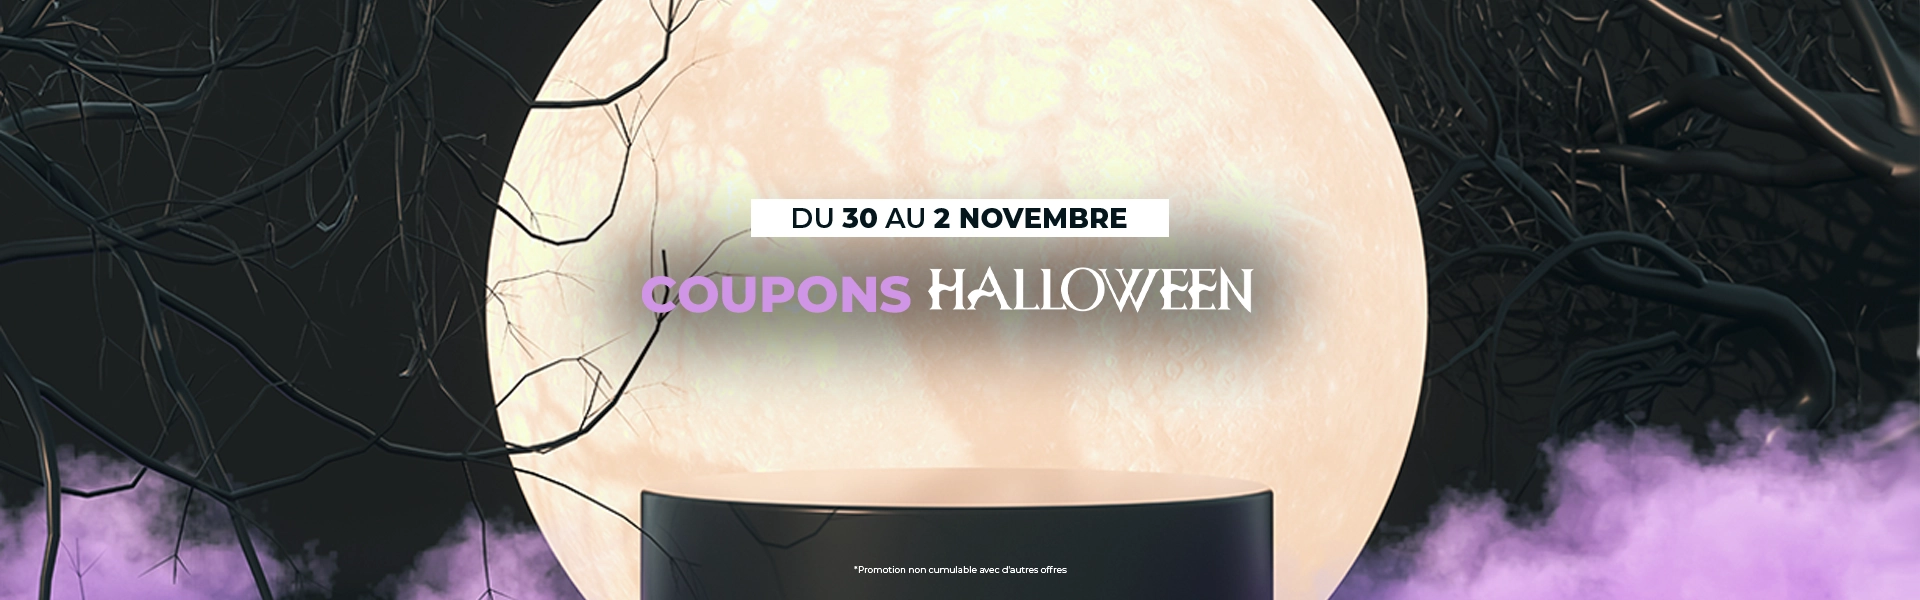 Économisez jusqu'à 15€ avec nos coupons d'Halloween